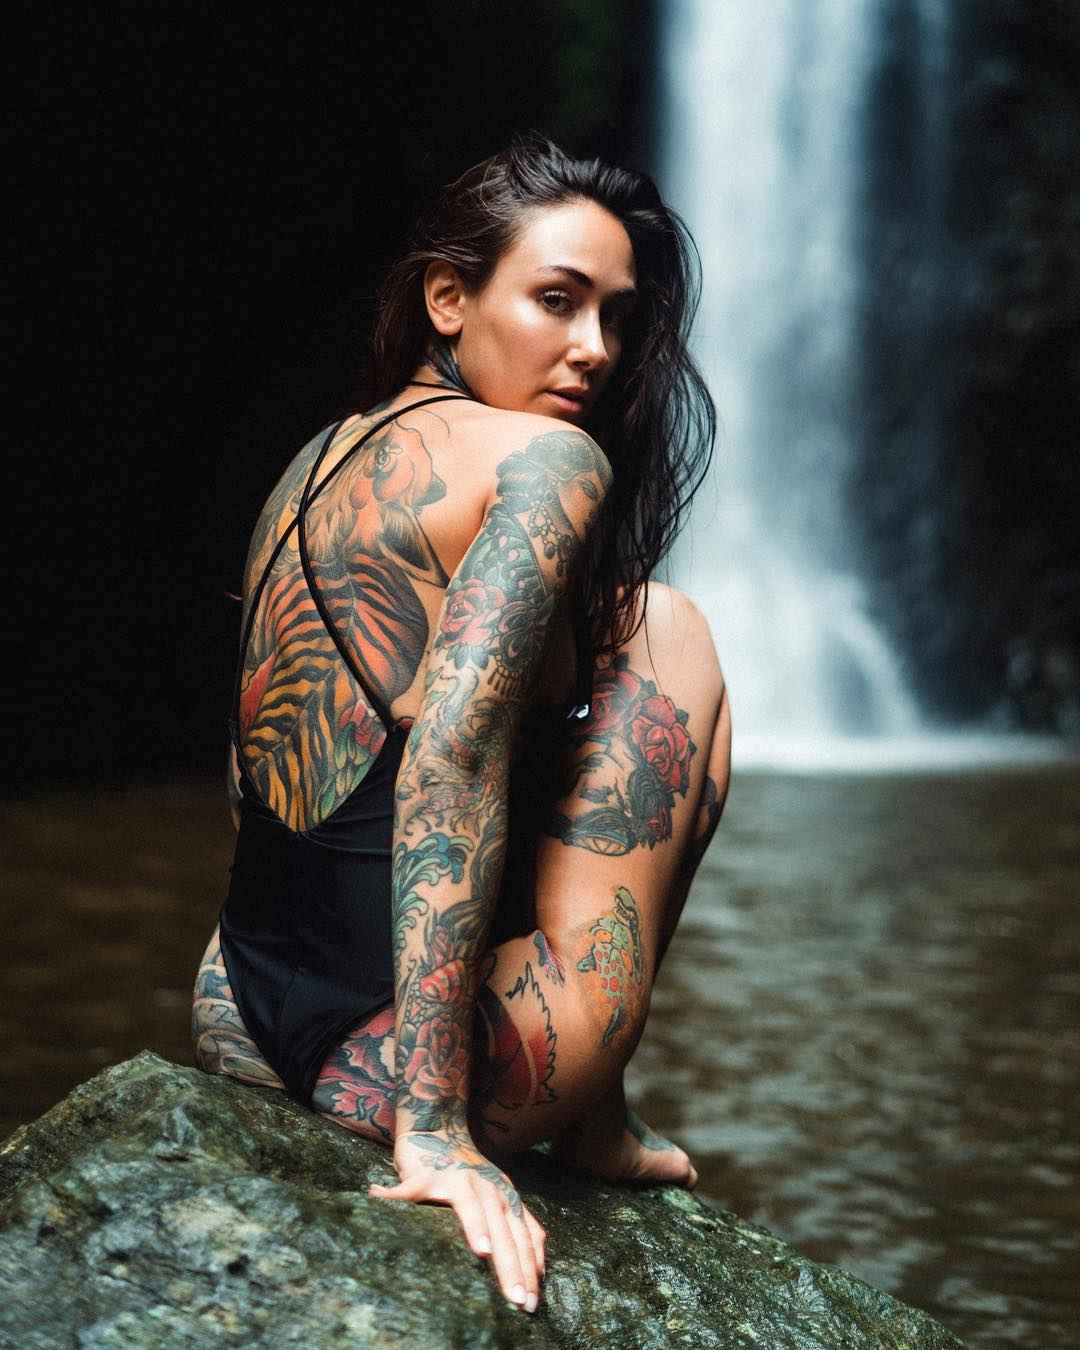 Татуированная модель и тату мастер Michelle Maron , альтернативная фото мод...